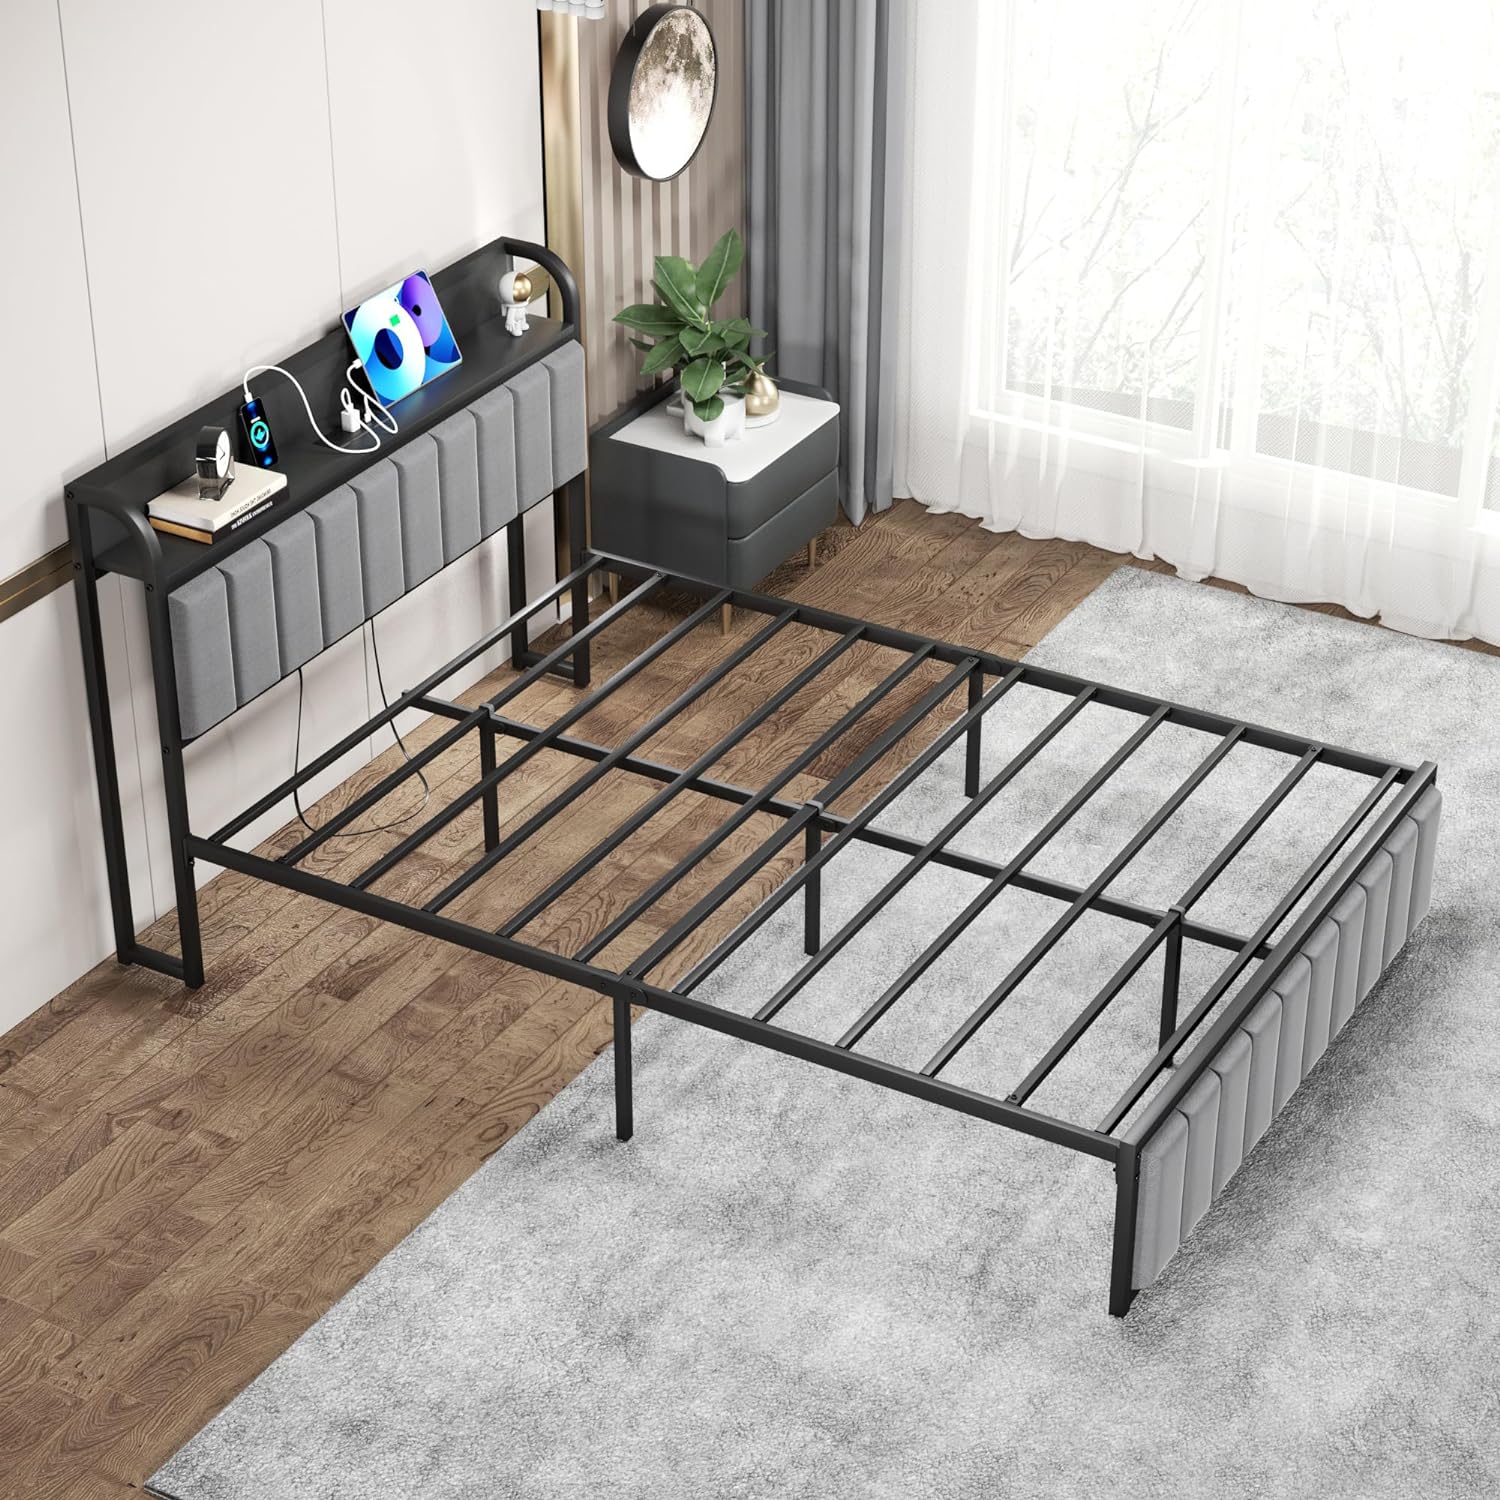 VECELO Bed Frame with Storage, Upholstered Platform Bedframe with Headboard